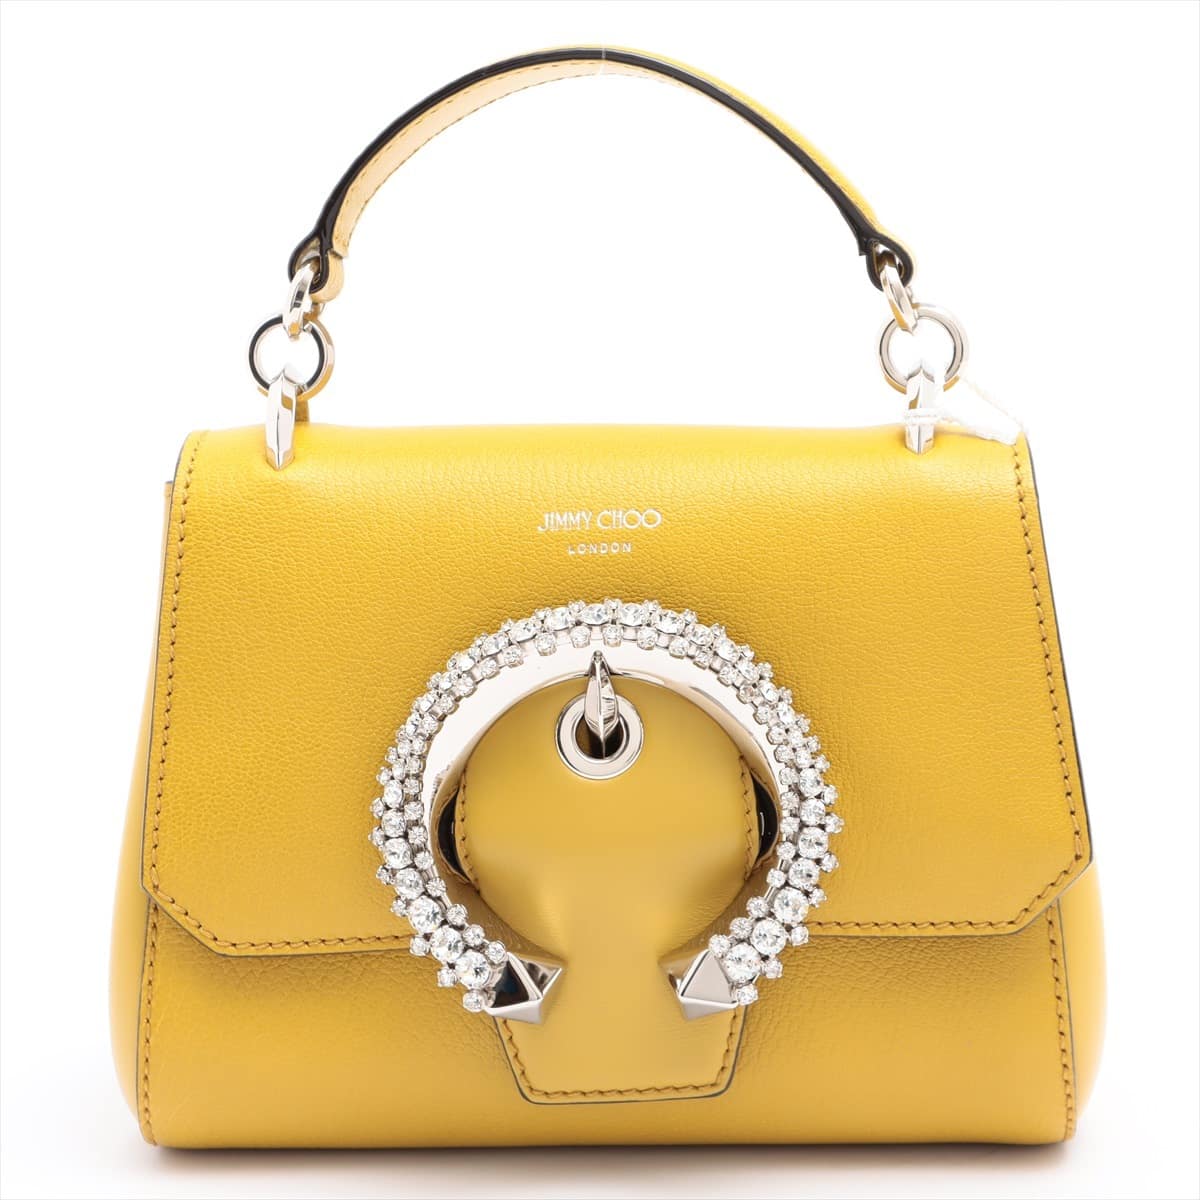 Jimmy Choo Madeline Top Handle Leather 2way handbag Yellow